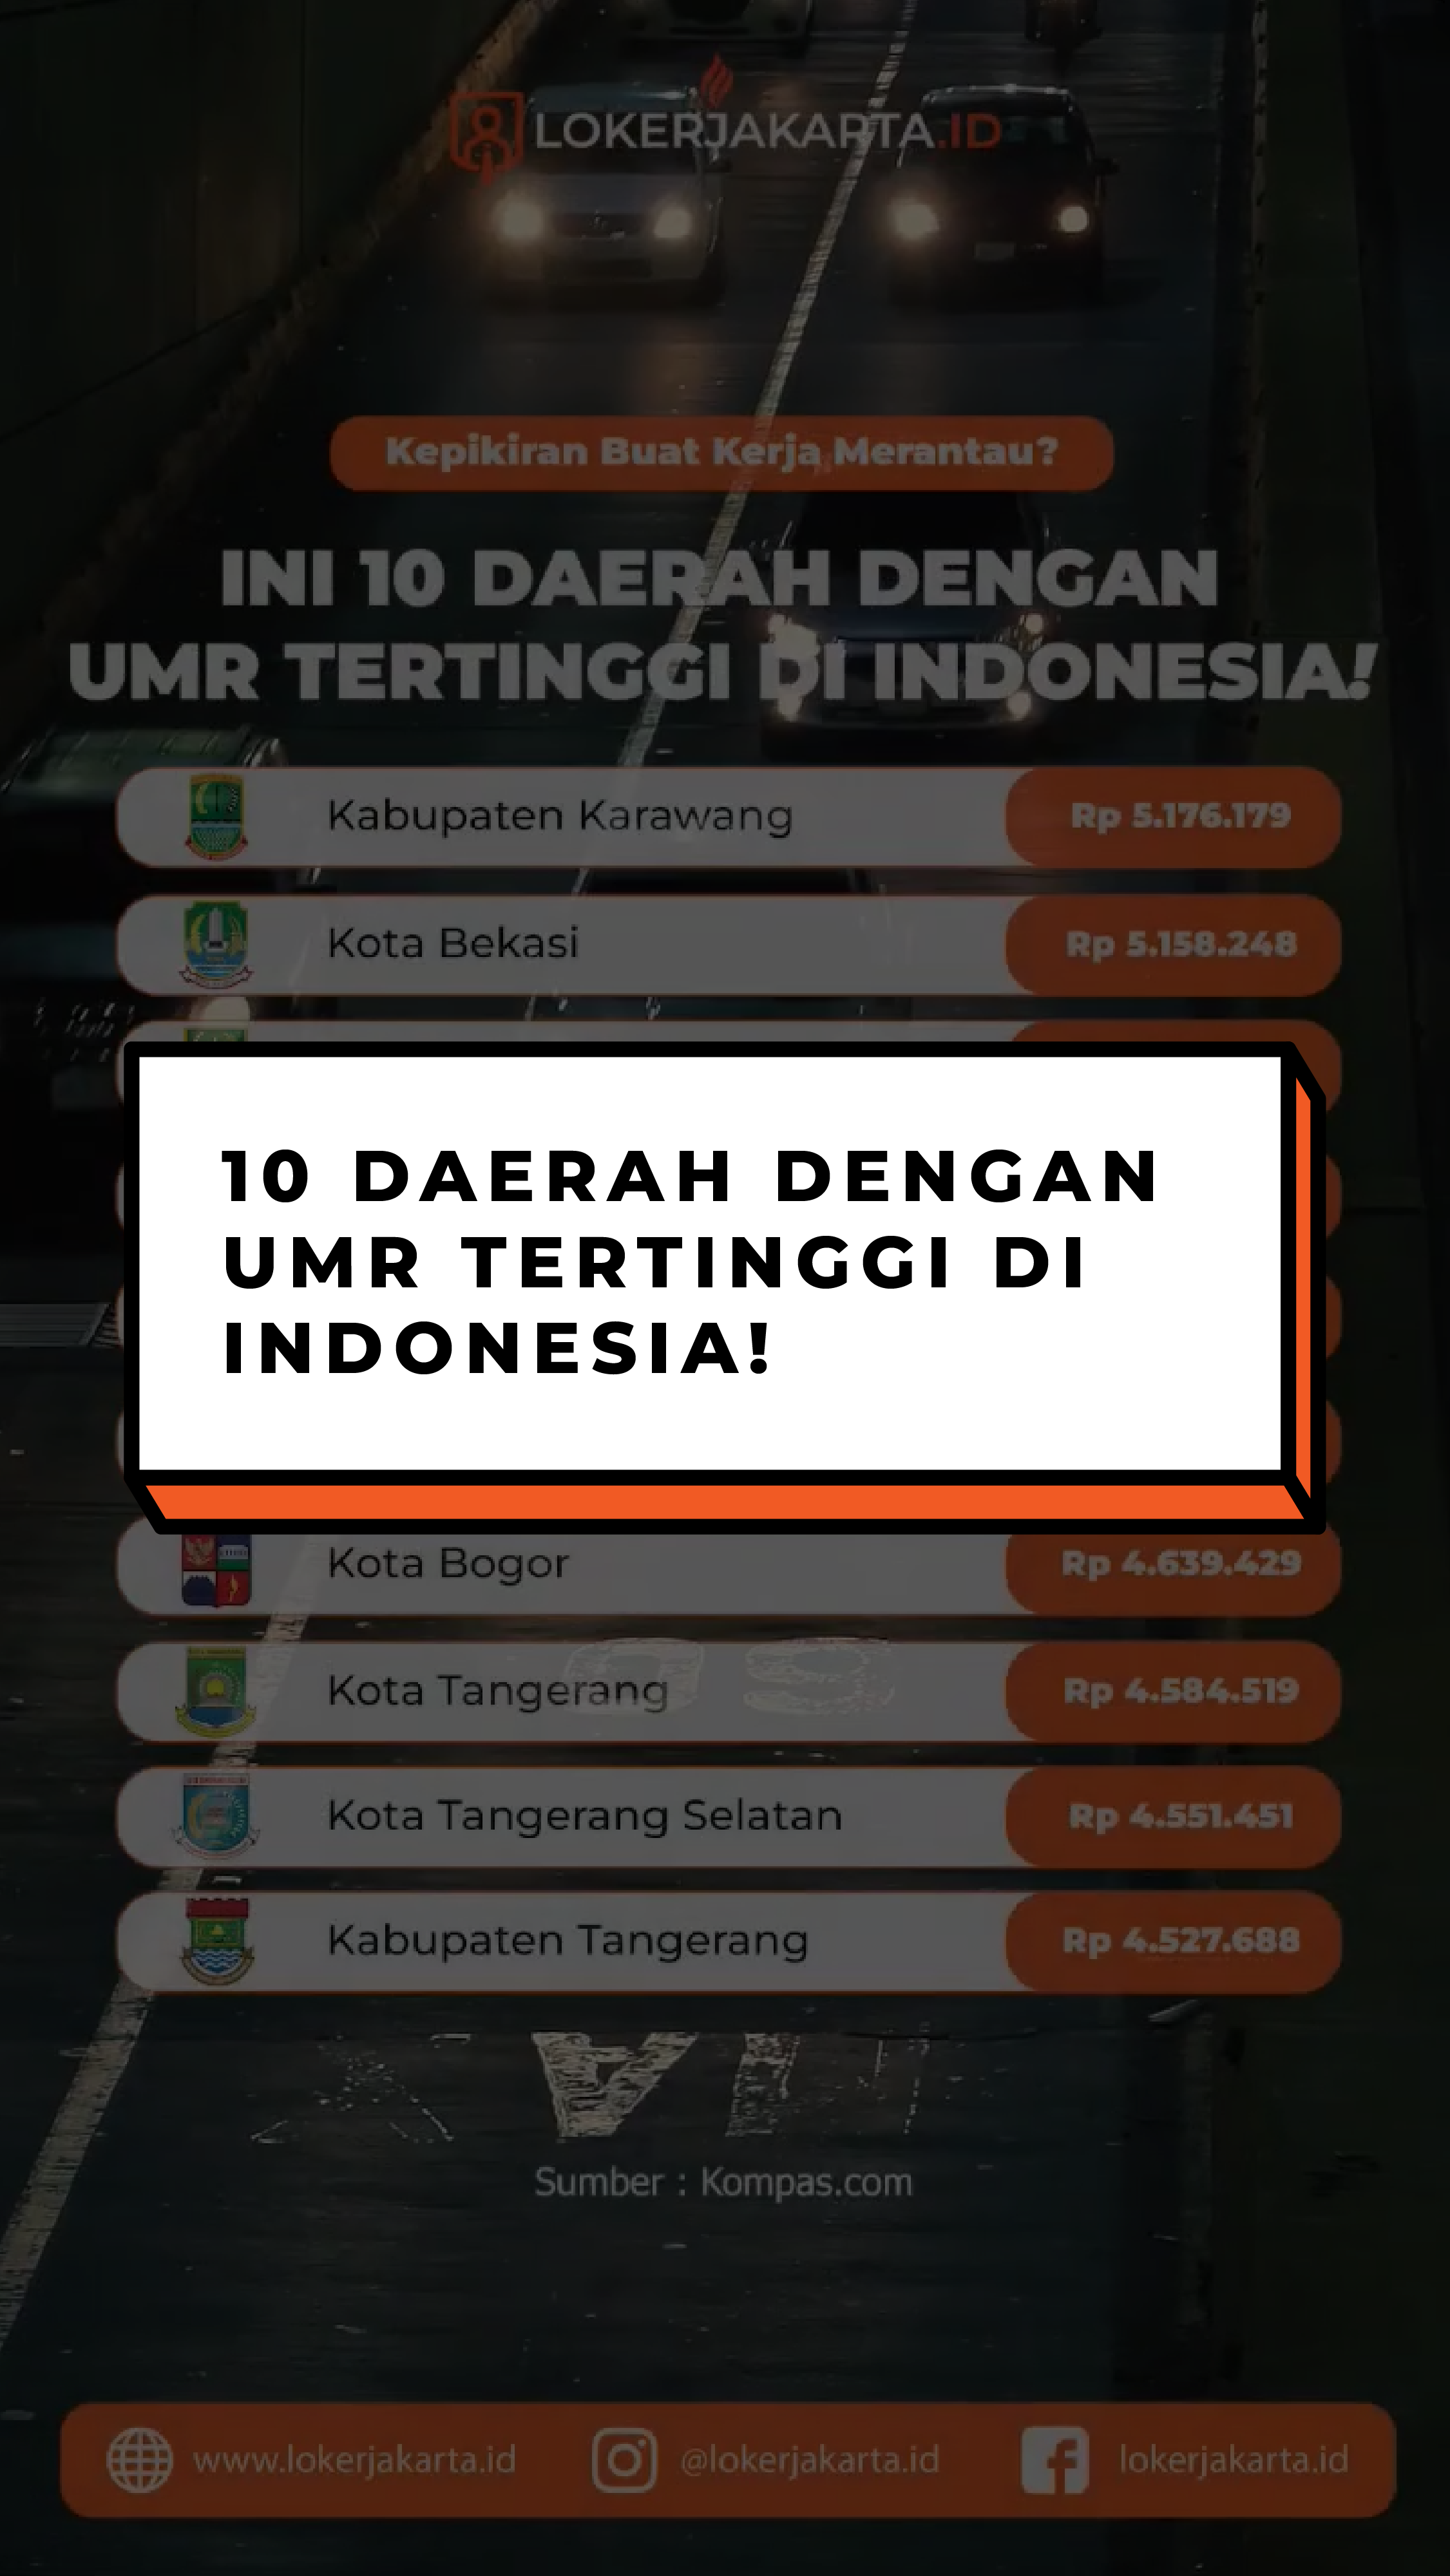 10 Daerah Dengan UMR Tertinggi di Indonesia